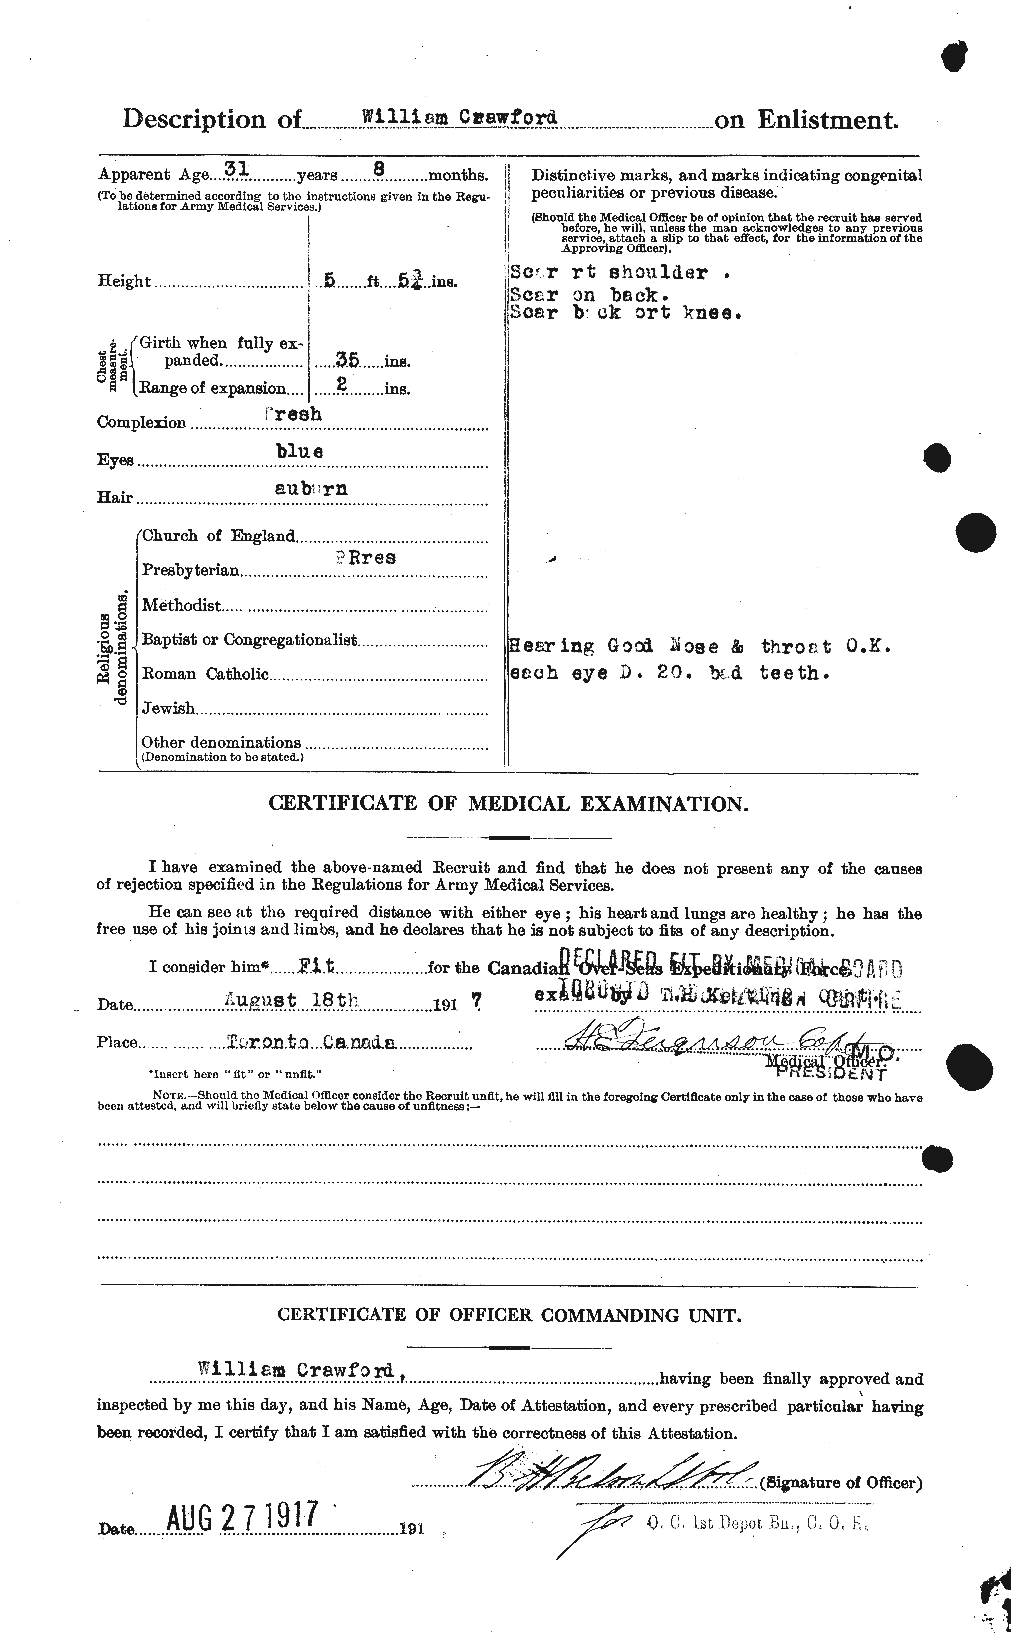 Dossiers du Personnel de la Première Guerre mondiale - CEC 061158b